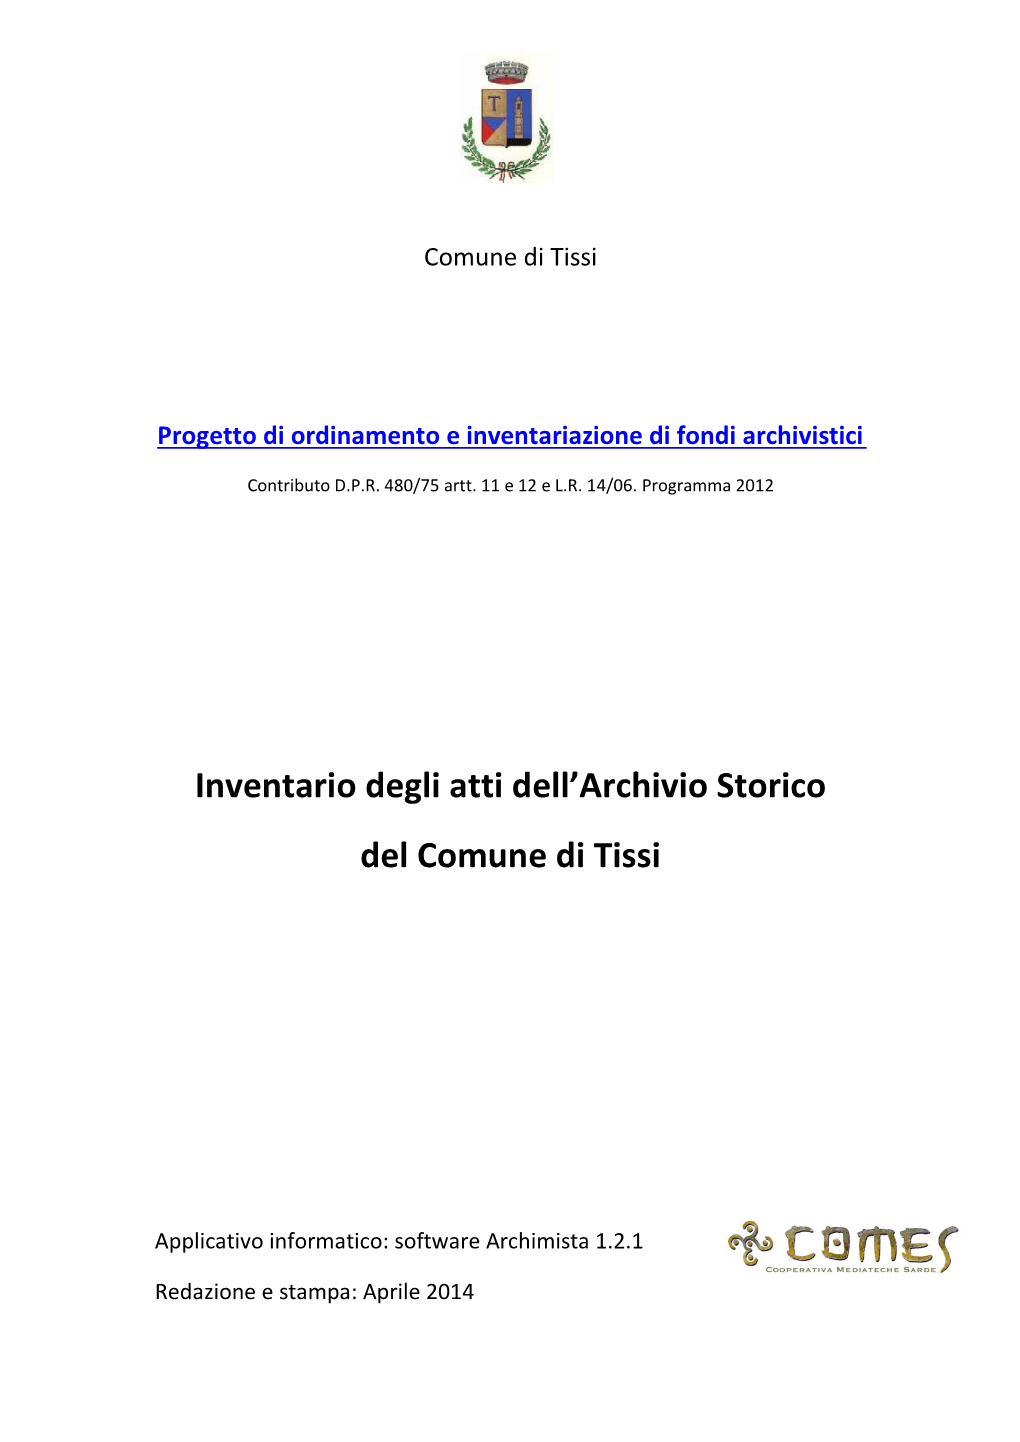 Archivio Storico Del Comune Di Tissi